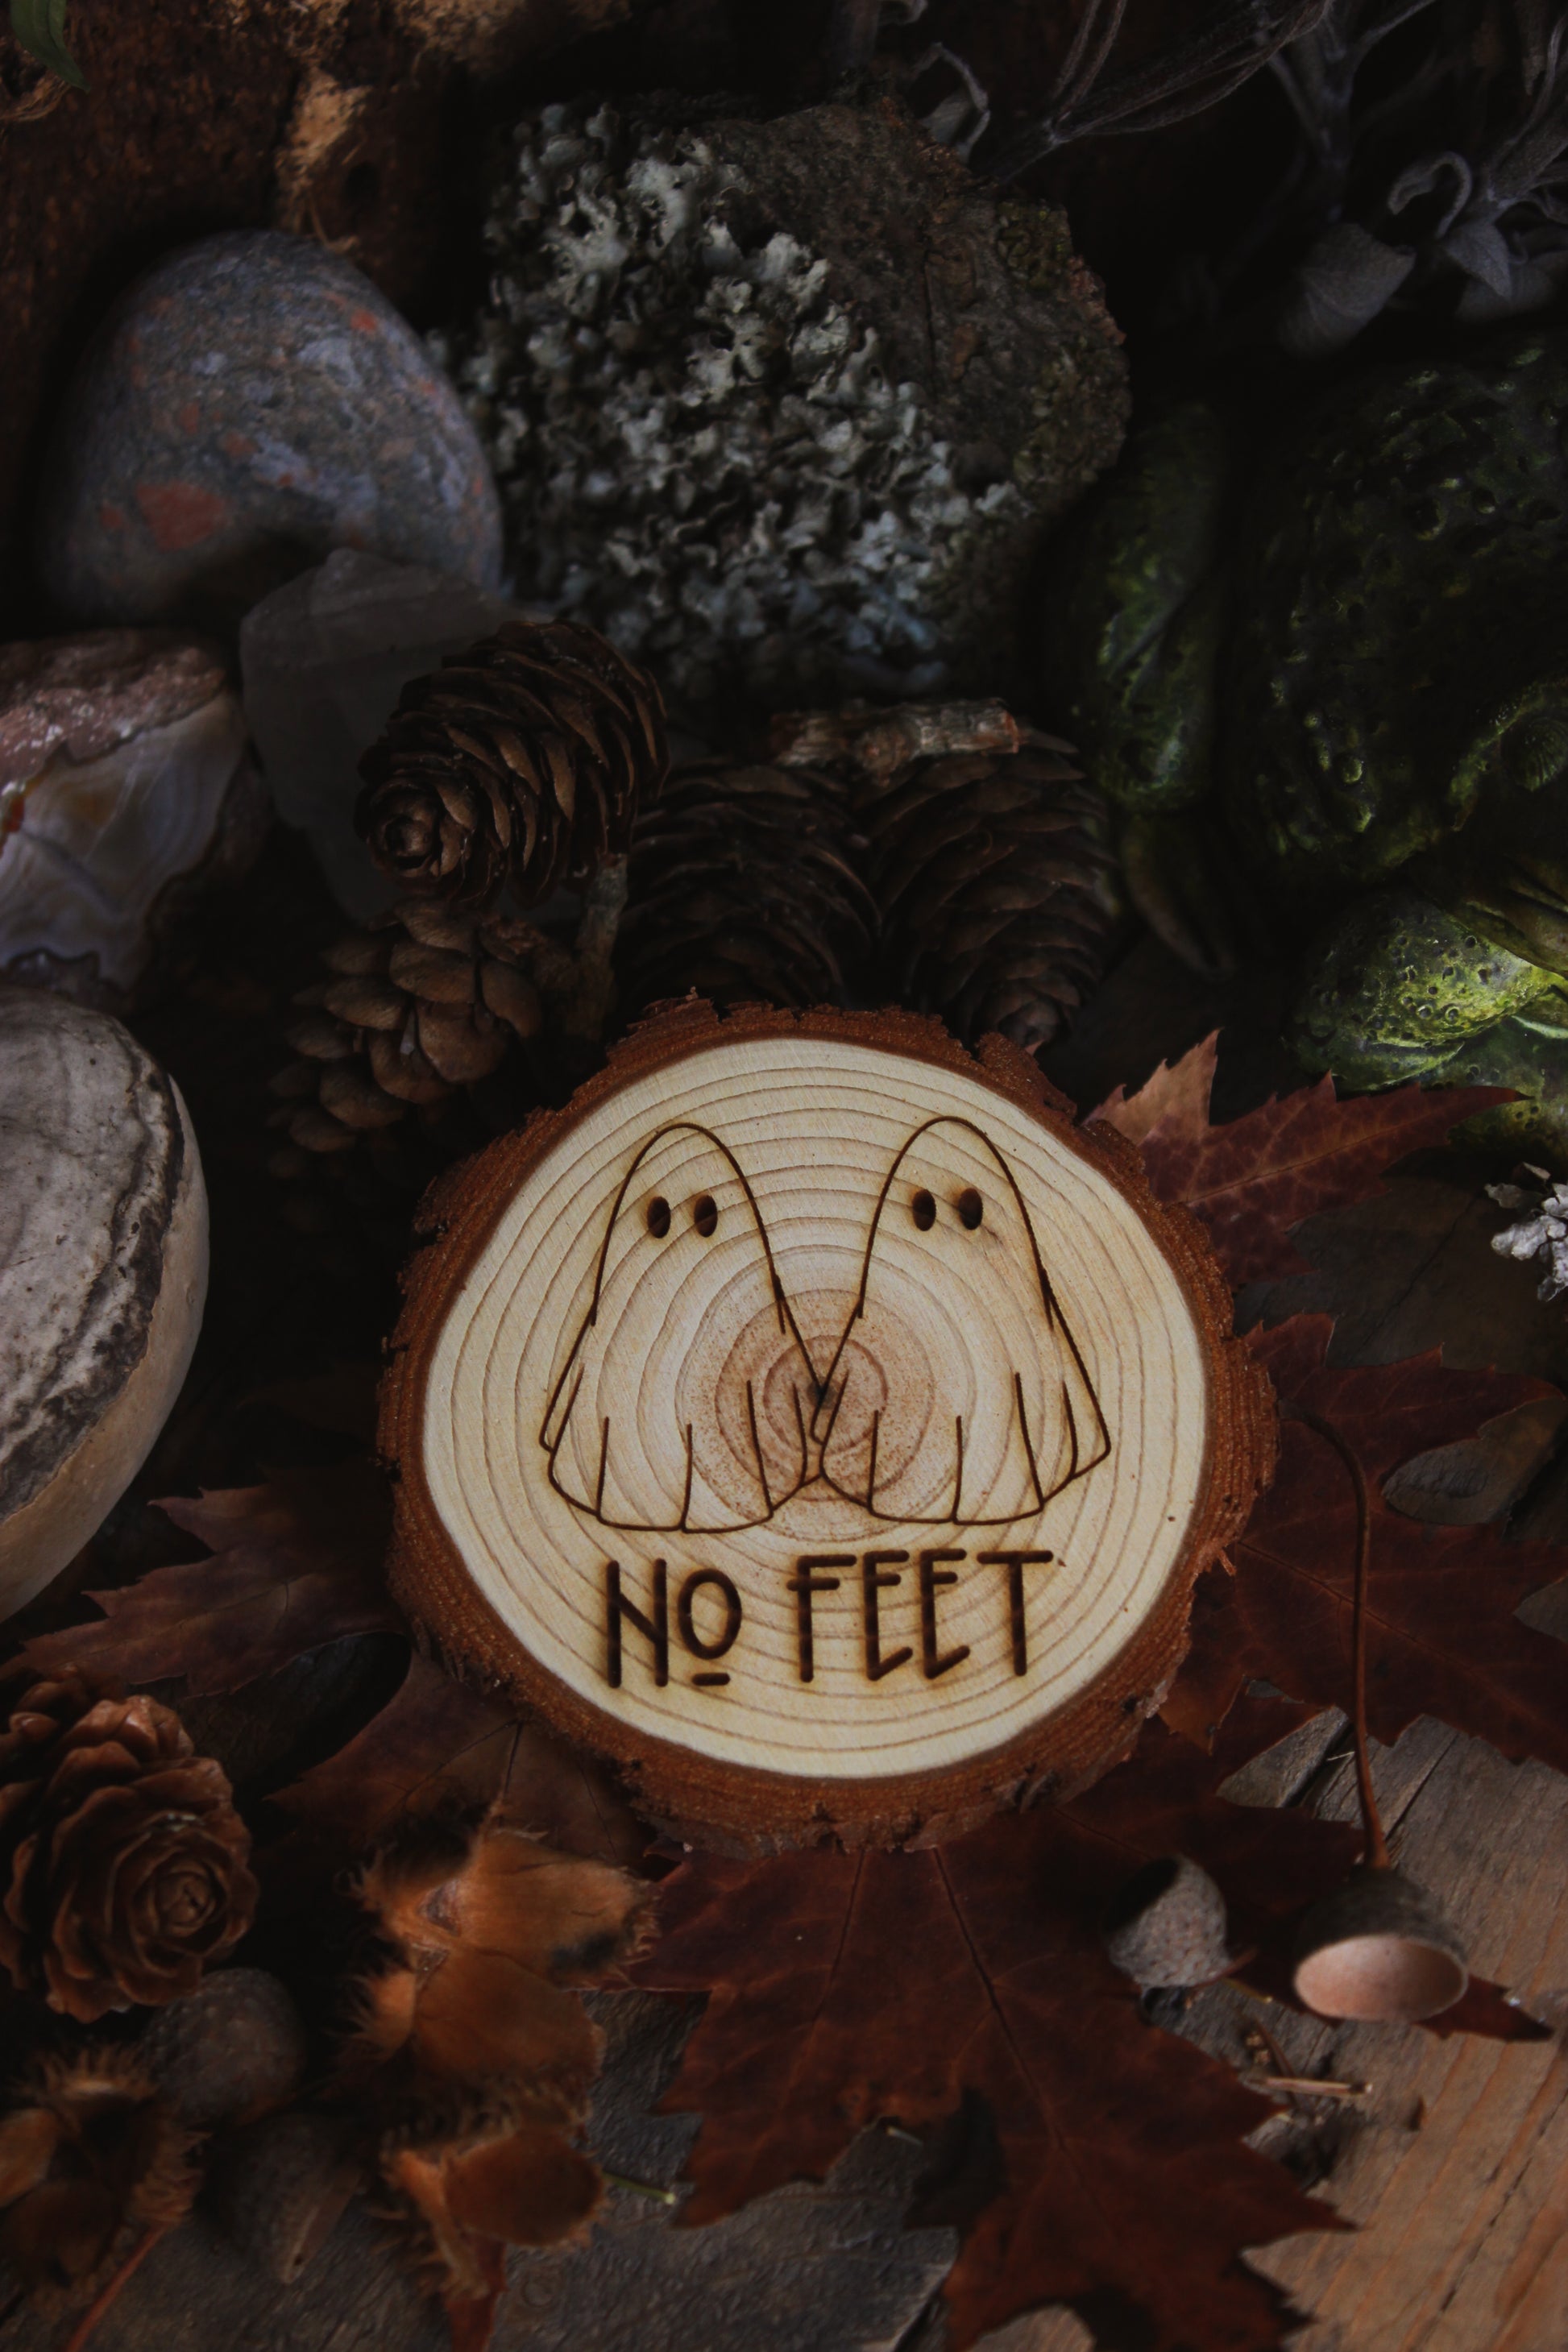 Wandbild aus Holz "No Feet" Eine Holzscheibe mit Geistermotiv "NO FEET" steht darunter, umgeben von Kräutern und Kristallen, alles steht auf einem braunen Tisch, rechts sieht man eine Kröte